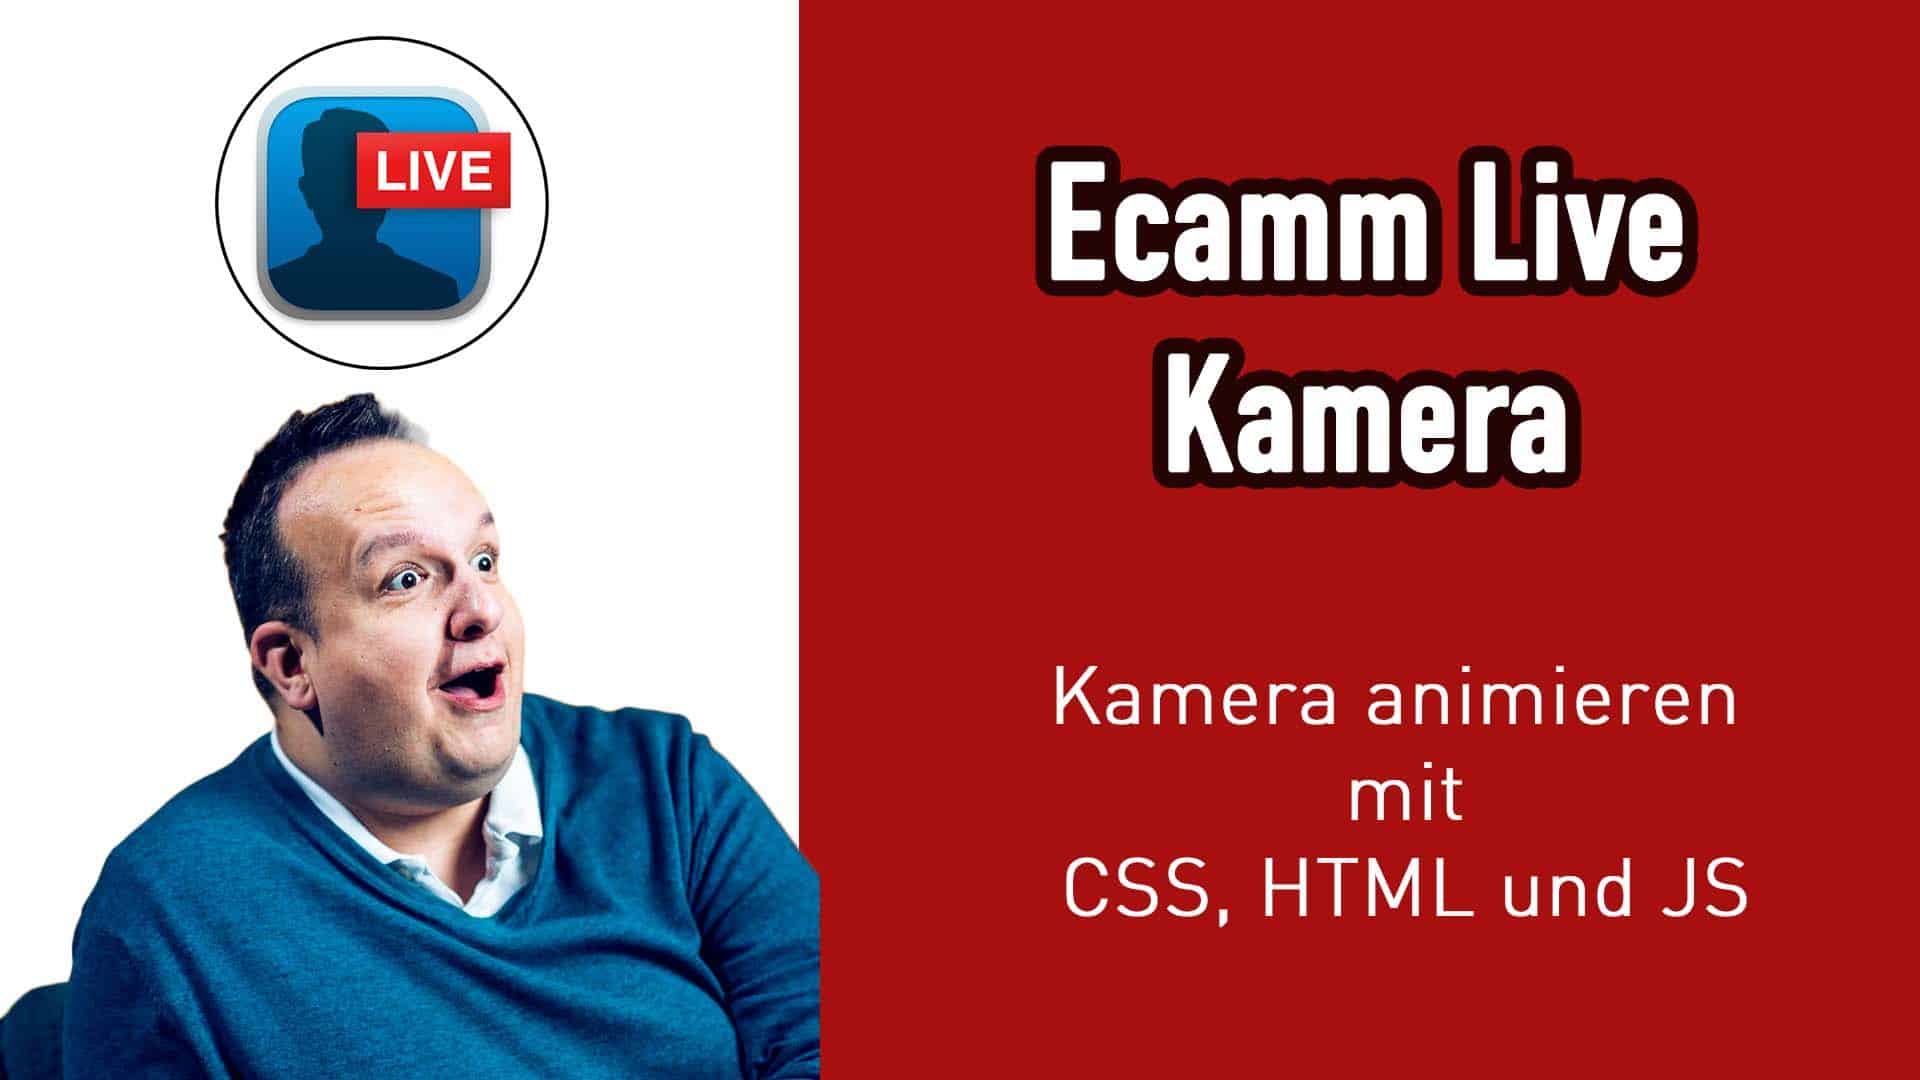 Ecamm Live Kamera mit CSS HTML und JS animieren (Ecamm Live oder OBS)